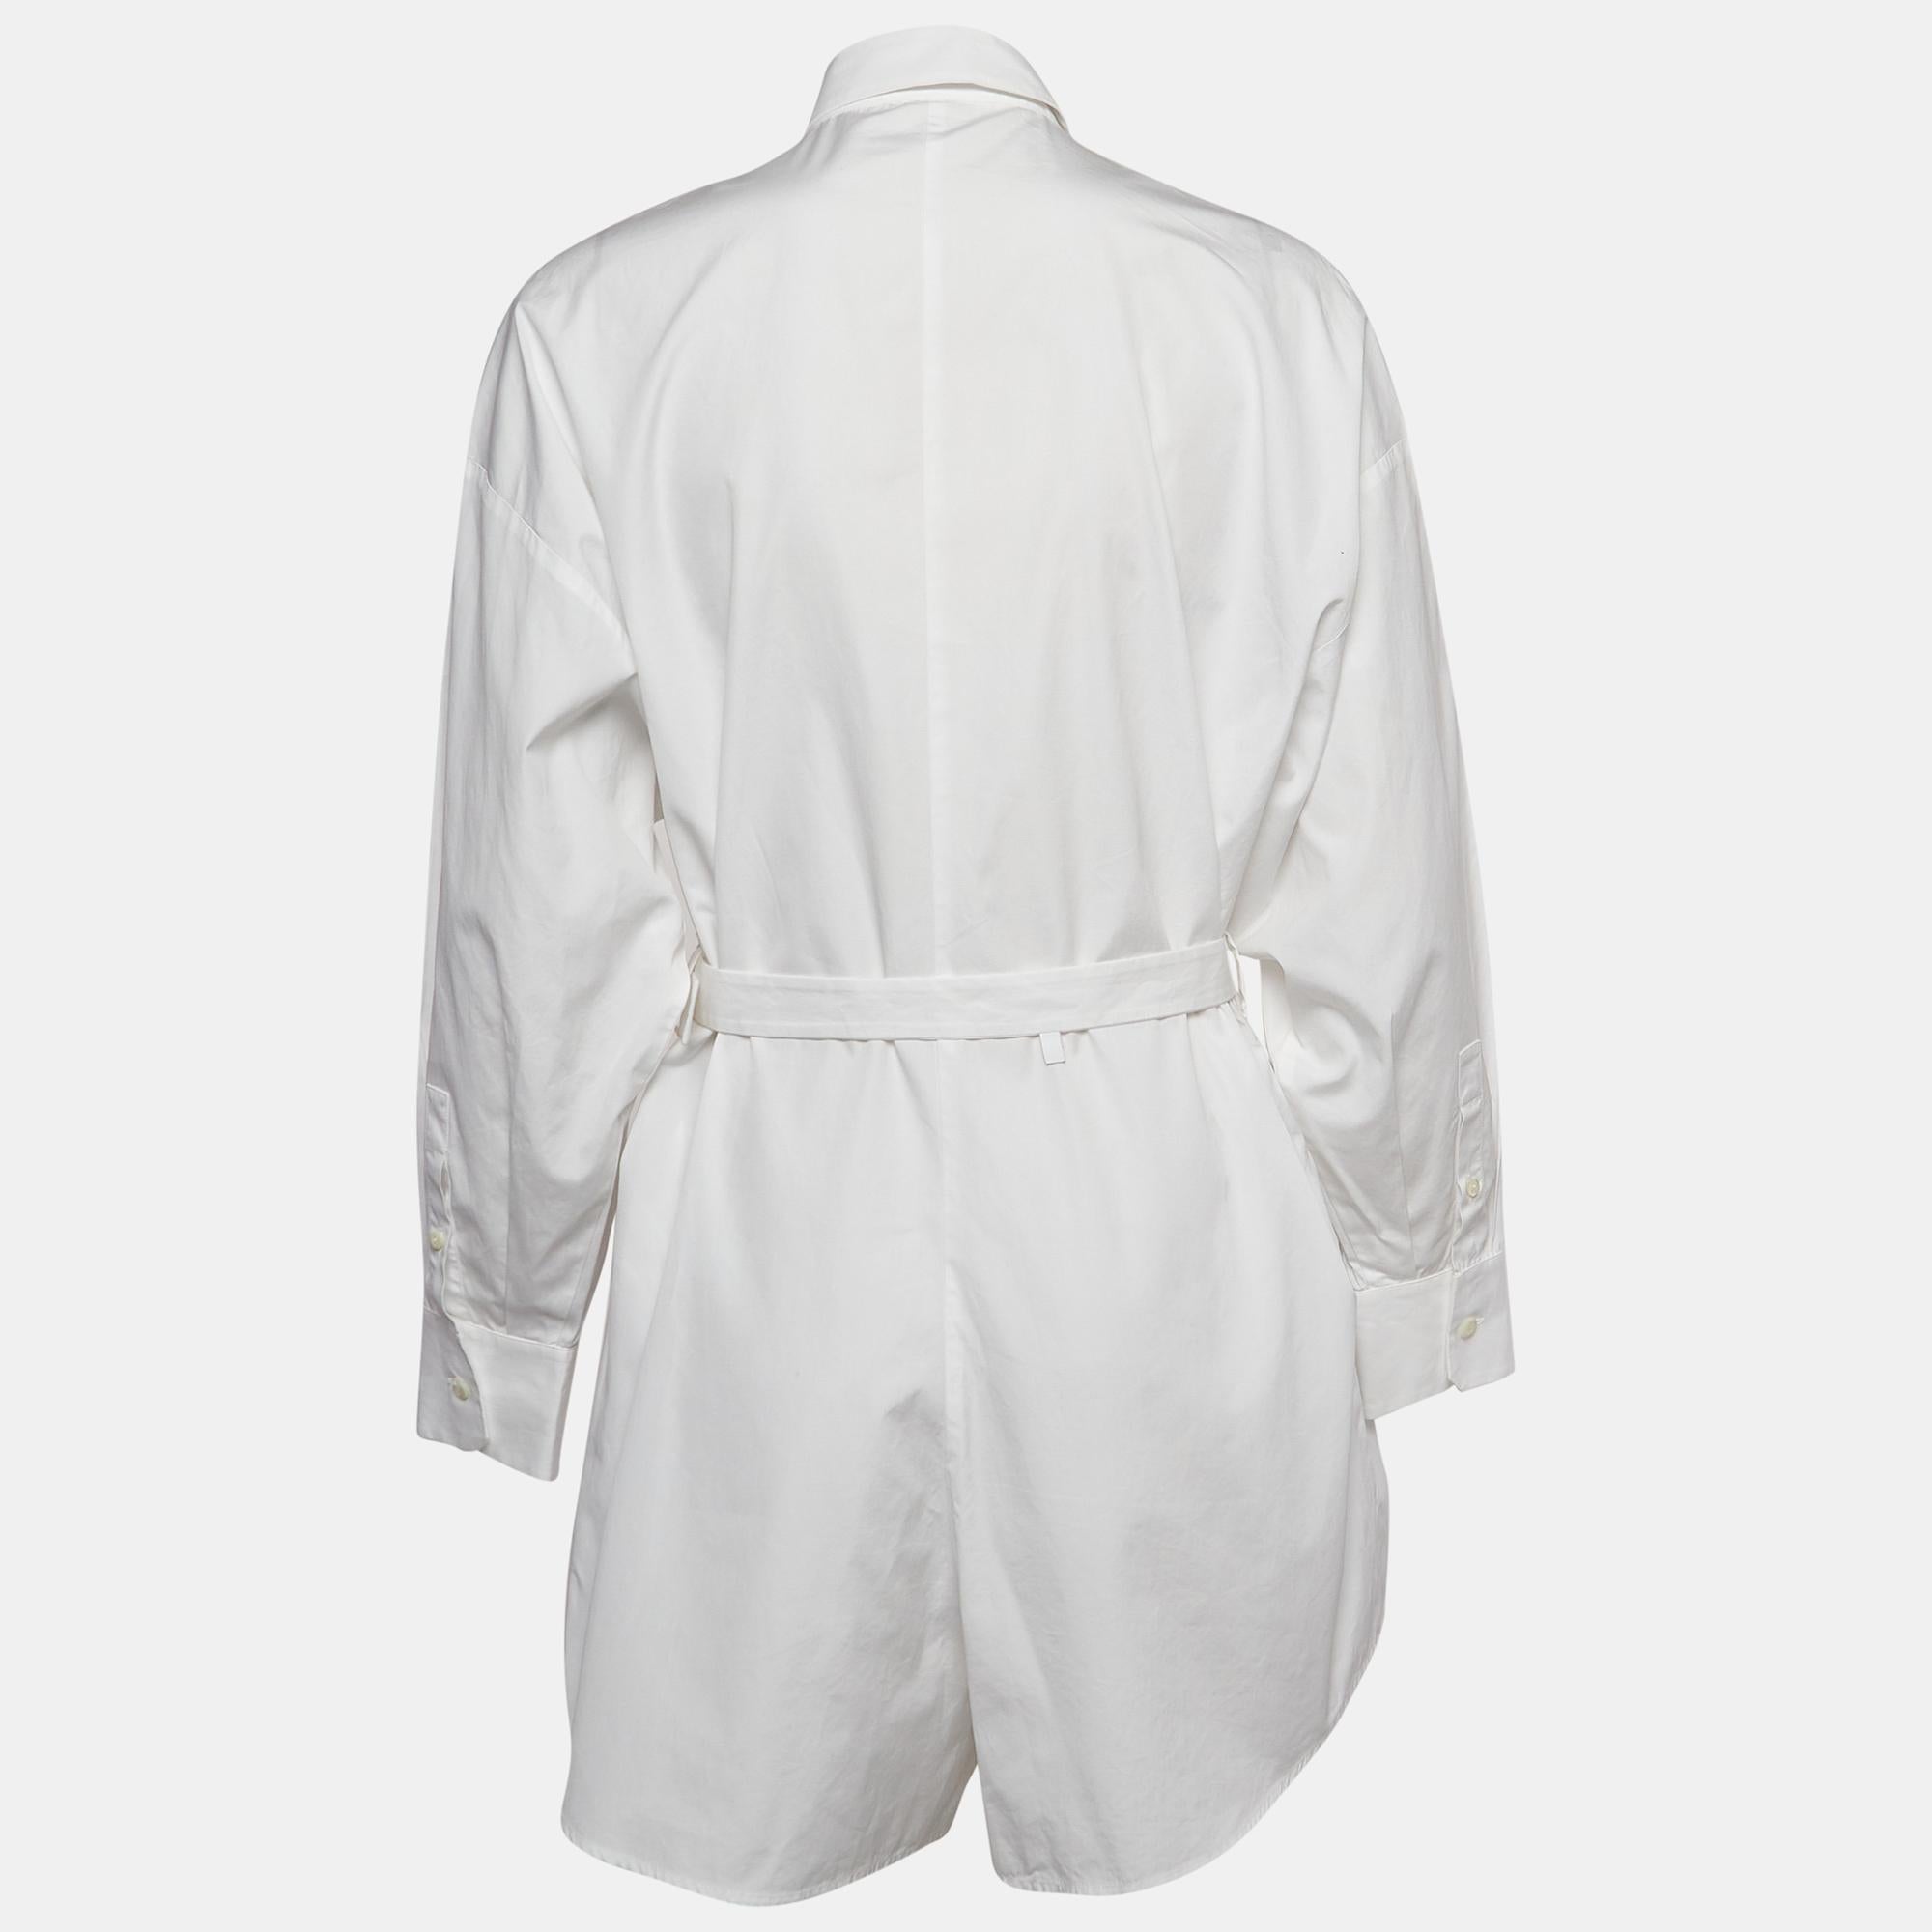 La combinaison blanche de Prada permet de créer des looks chics. Il est taillé dans du coton et se présente sous la forme d'une chemise ceinturée, pour un confort et une sophistication décontractés. Portez ce costume avec des baskets, des mocassins,